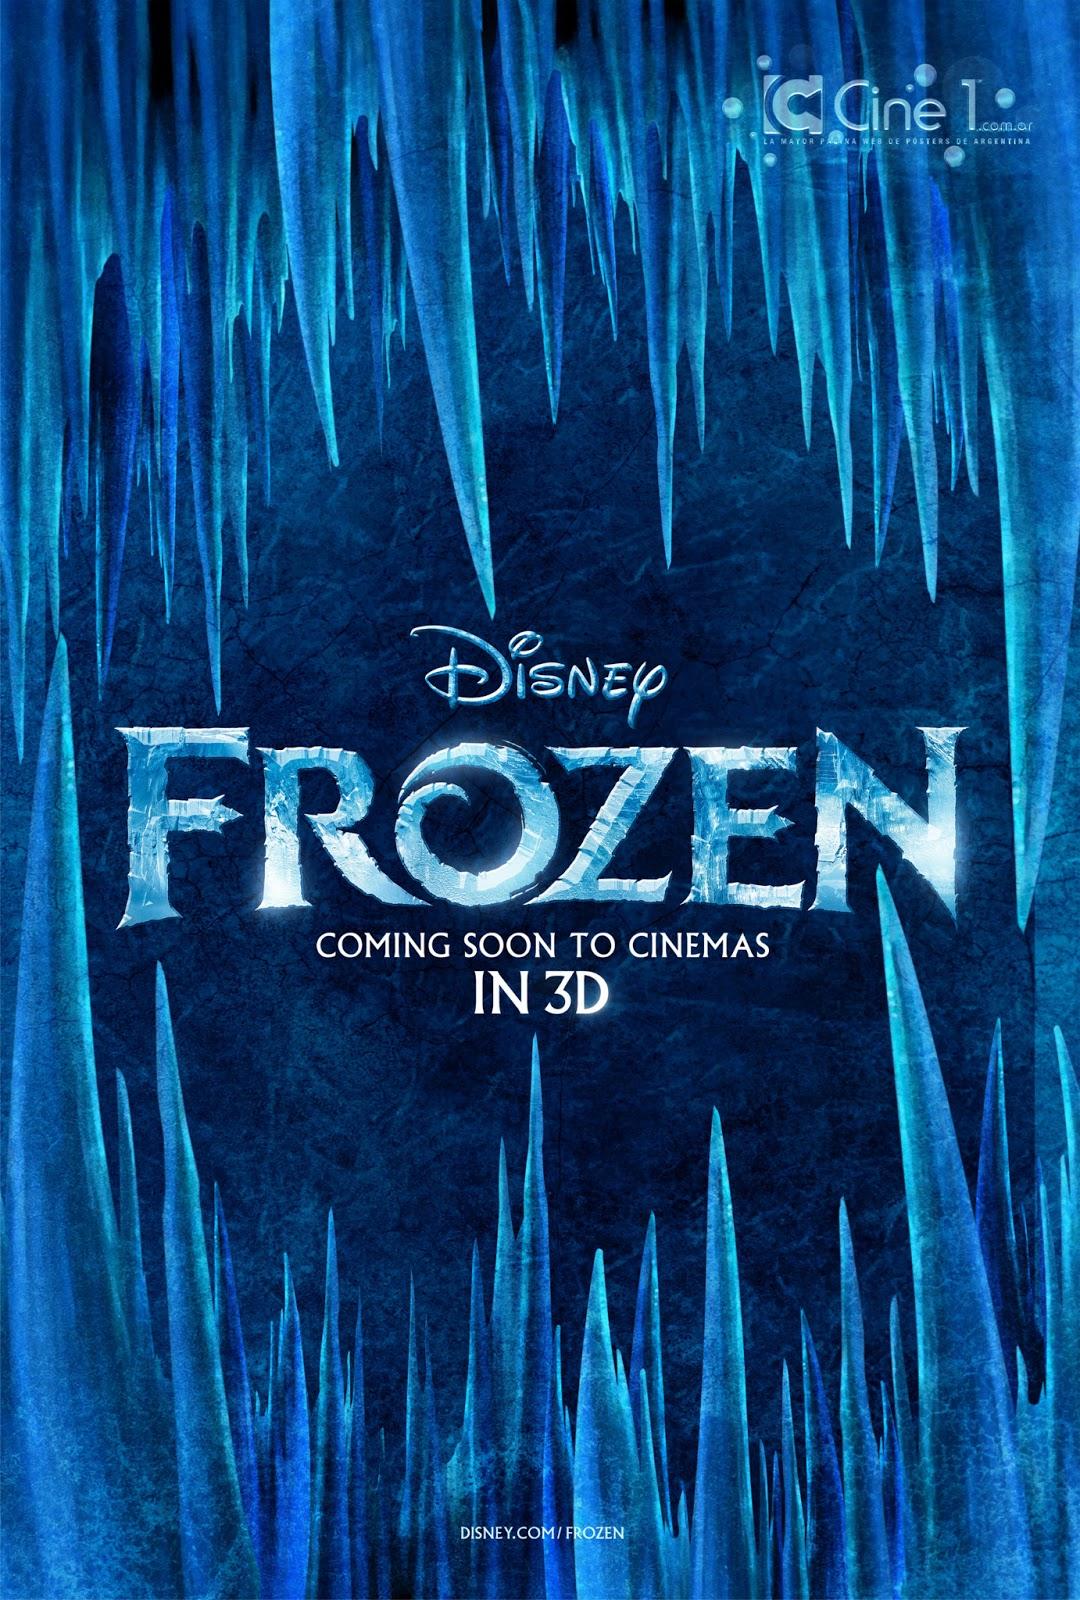 Disney Frozen Frozen Poster Wallpaper Image for iPhone 6